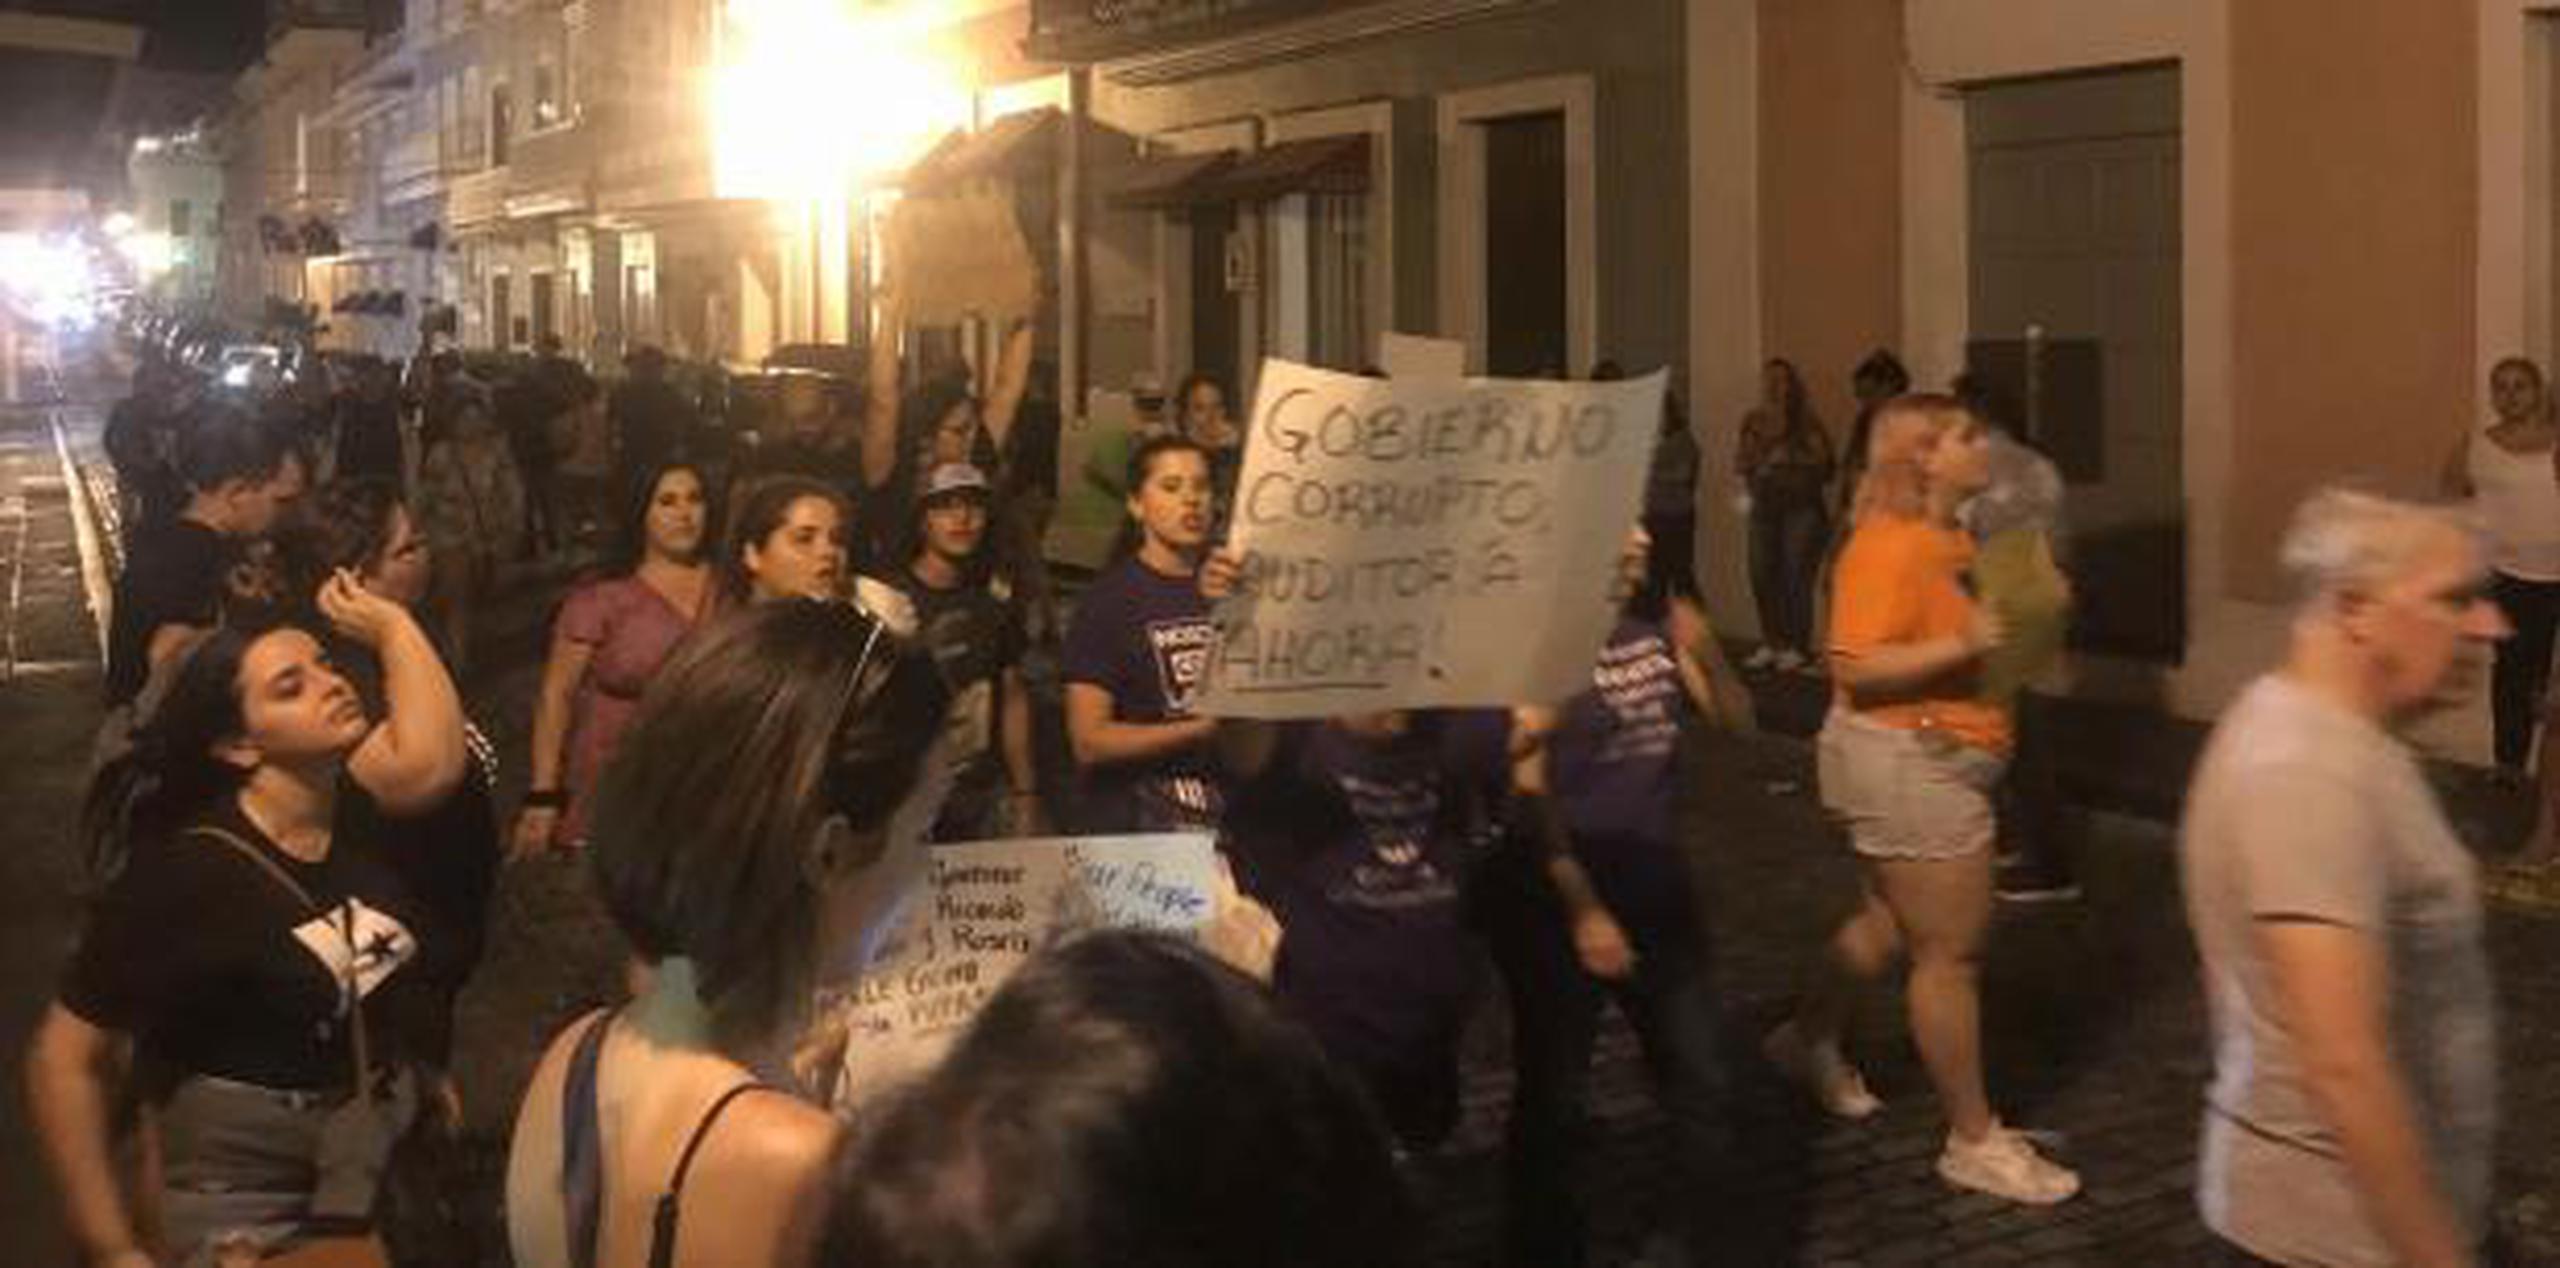 Los manifestantes presentes le pidieron la dimisión a Rosselló con consignas que incluyen palabras como “corrupto”, “misógino” y “macharrán”. (josekarlo.pagan@gfrmedia.com)